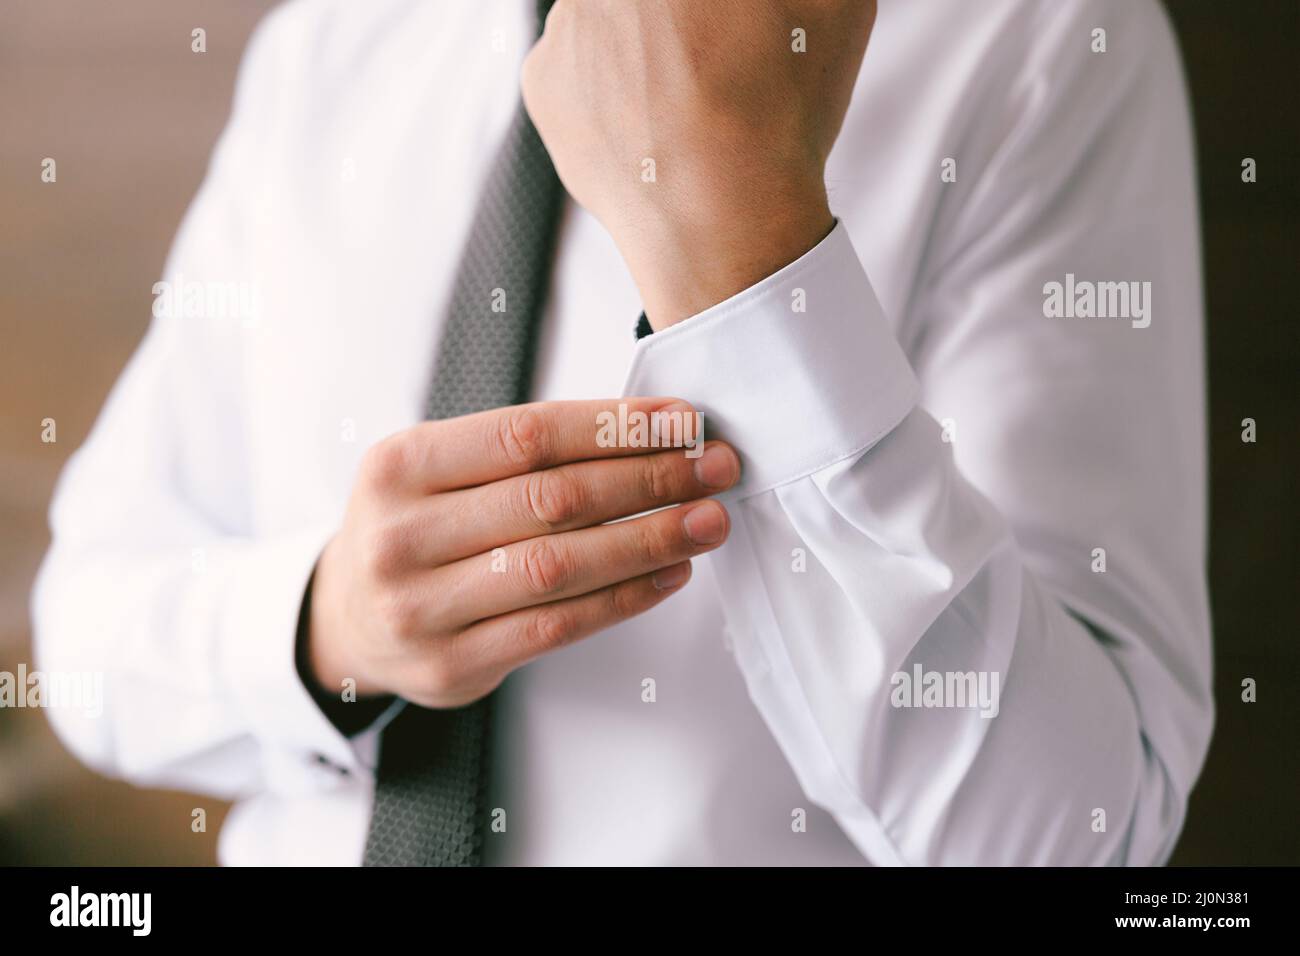 Mann in einer Krawatte knöpft die Ärmel eines weißen Hemdes hoch. Nahaufnahme Stockfoto